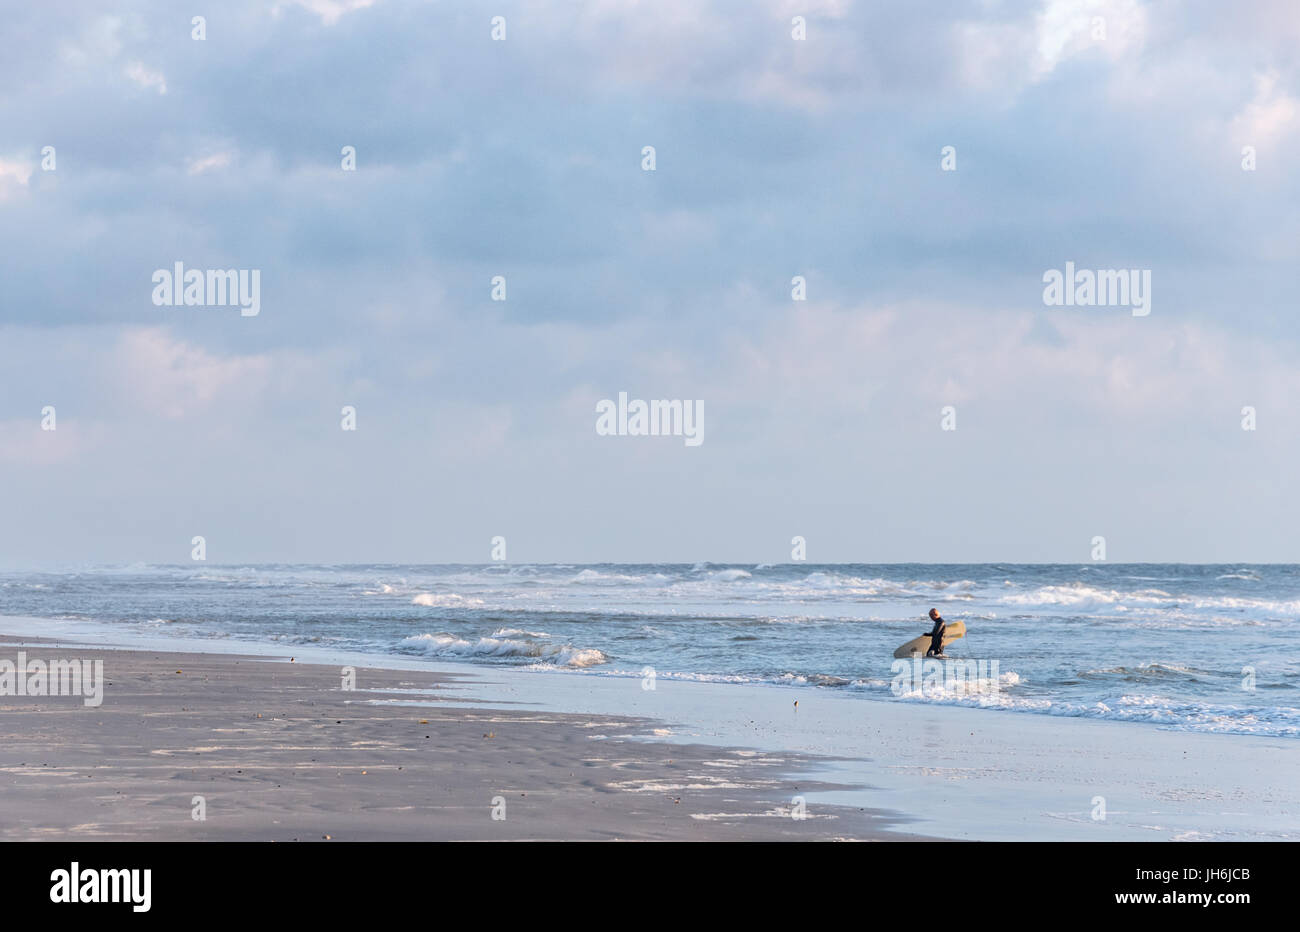 Am frühen Morgen Strandszene in Ponte Vedra Beach, Florida als senior Surfer wird das Wasser nach einer belebenden Sunrise Surf-Session beendet. Stockfoto